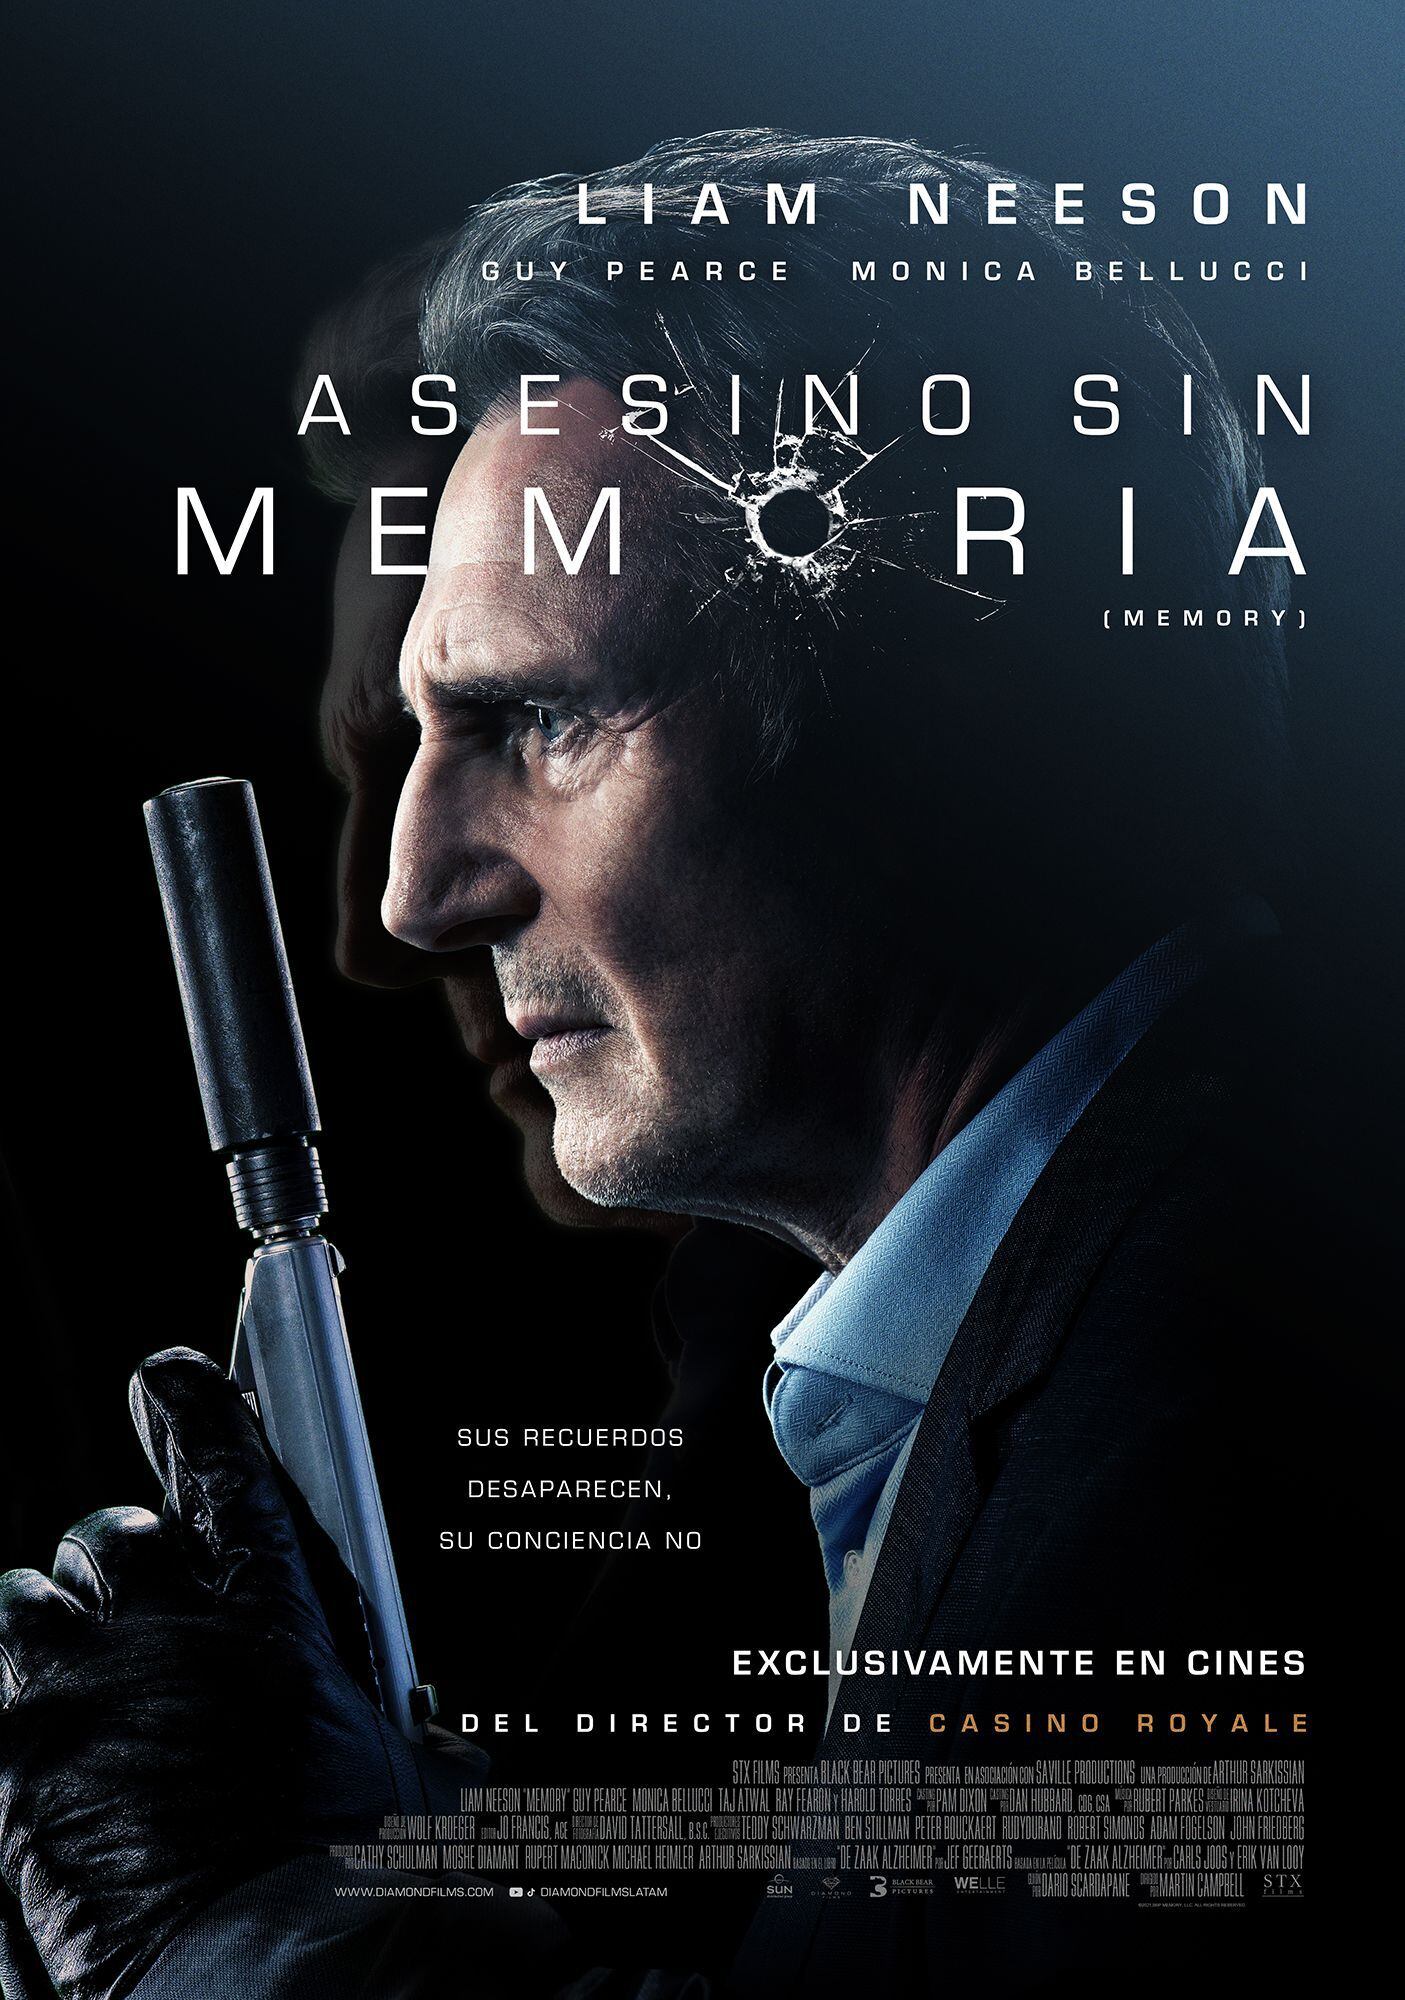 Liam Neeson regresa al género de acción con “Asesino sin memoria”. (Foto: Captura)